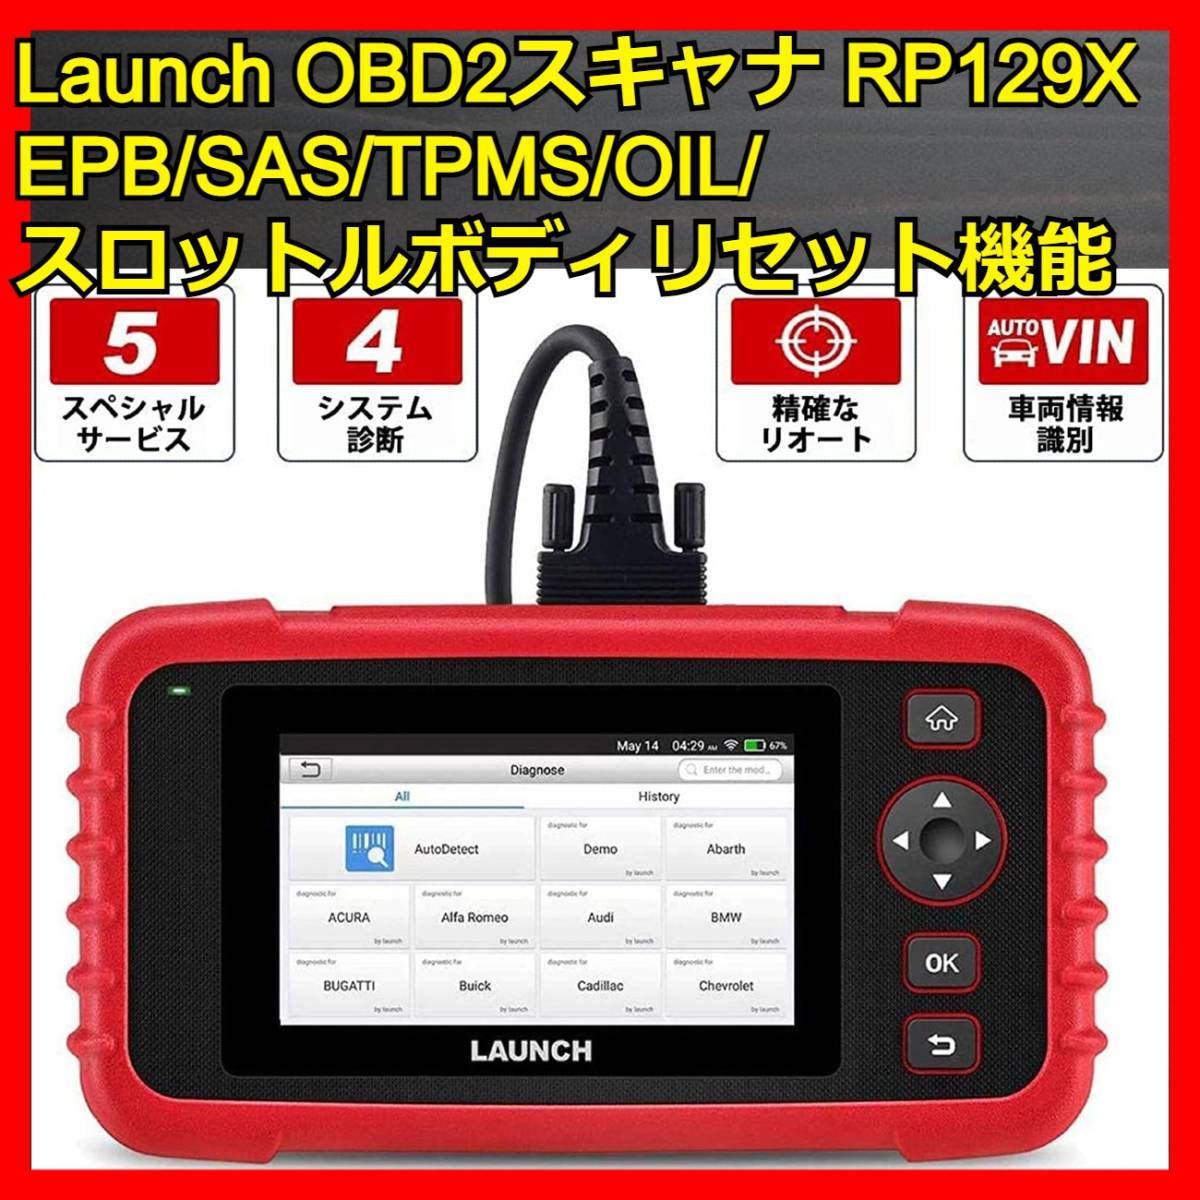 永遠の定番モデル LAUNCH OBD2 自動車診断機 日本語対応可能